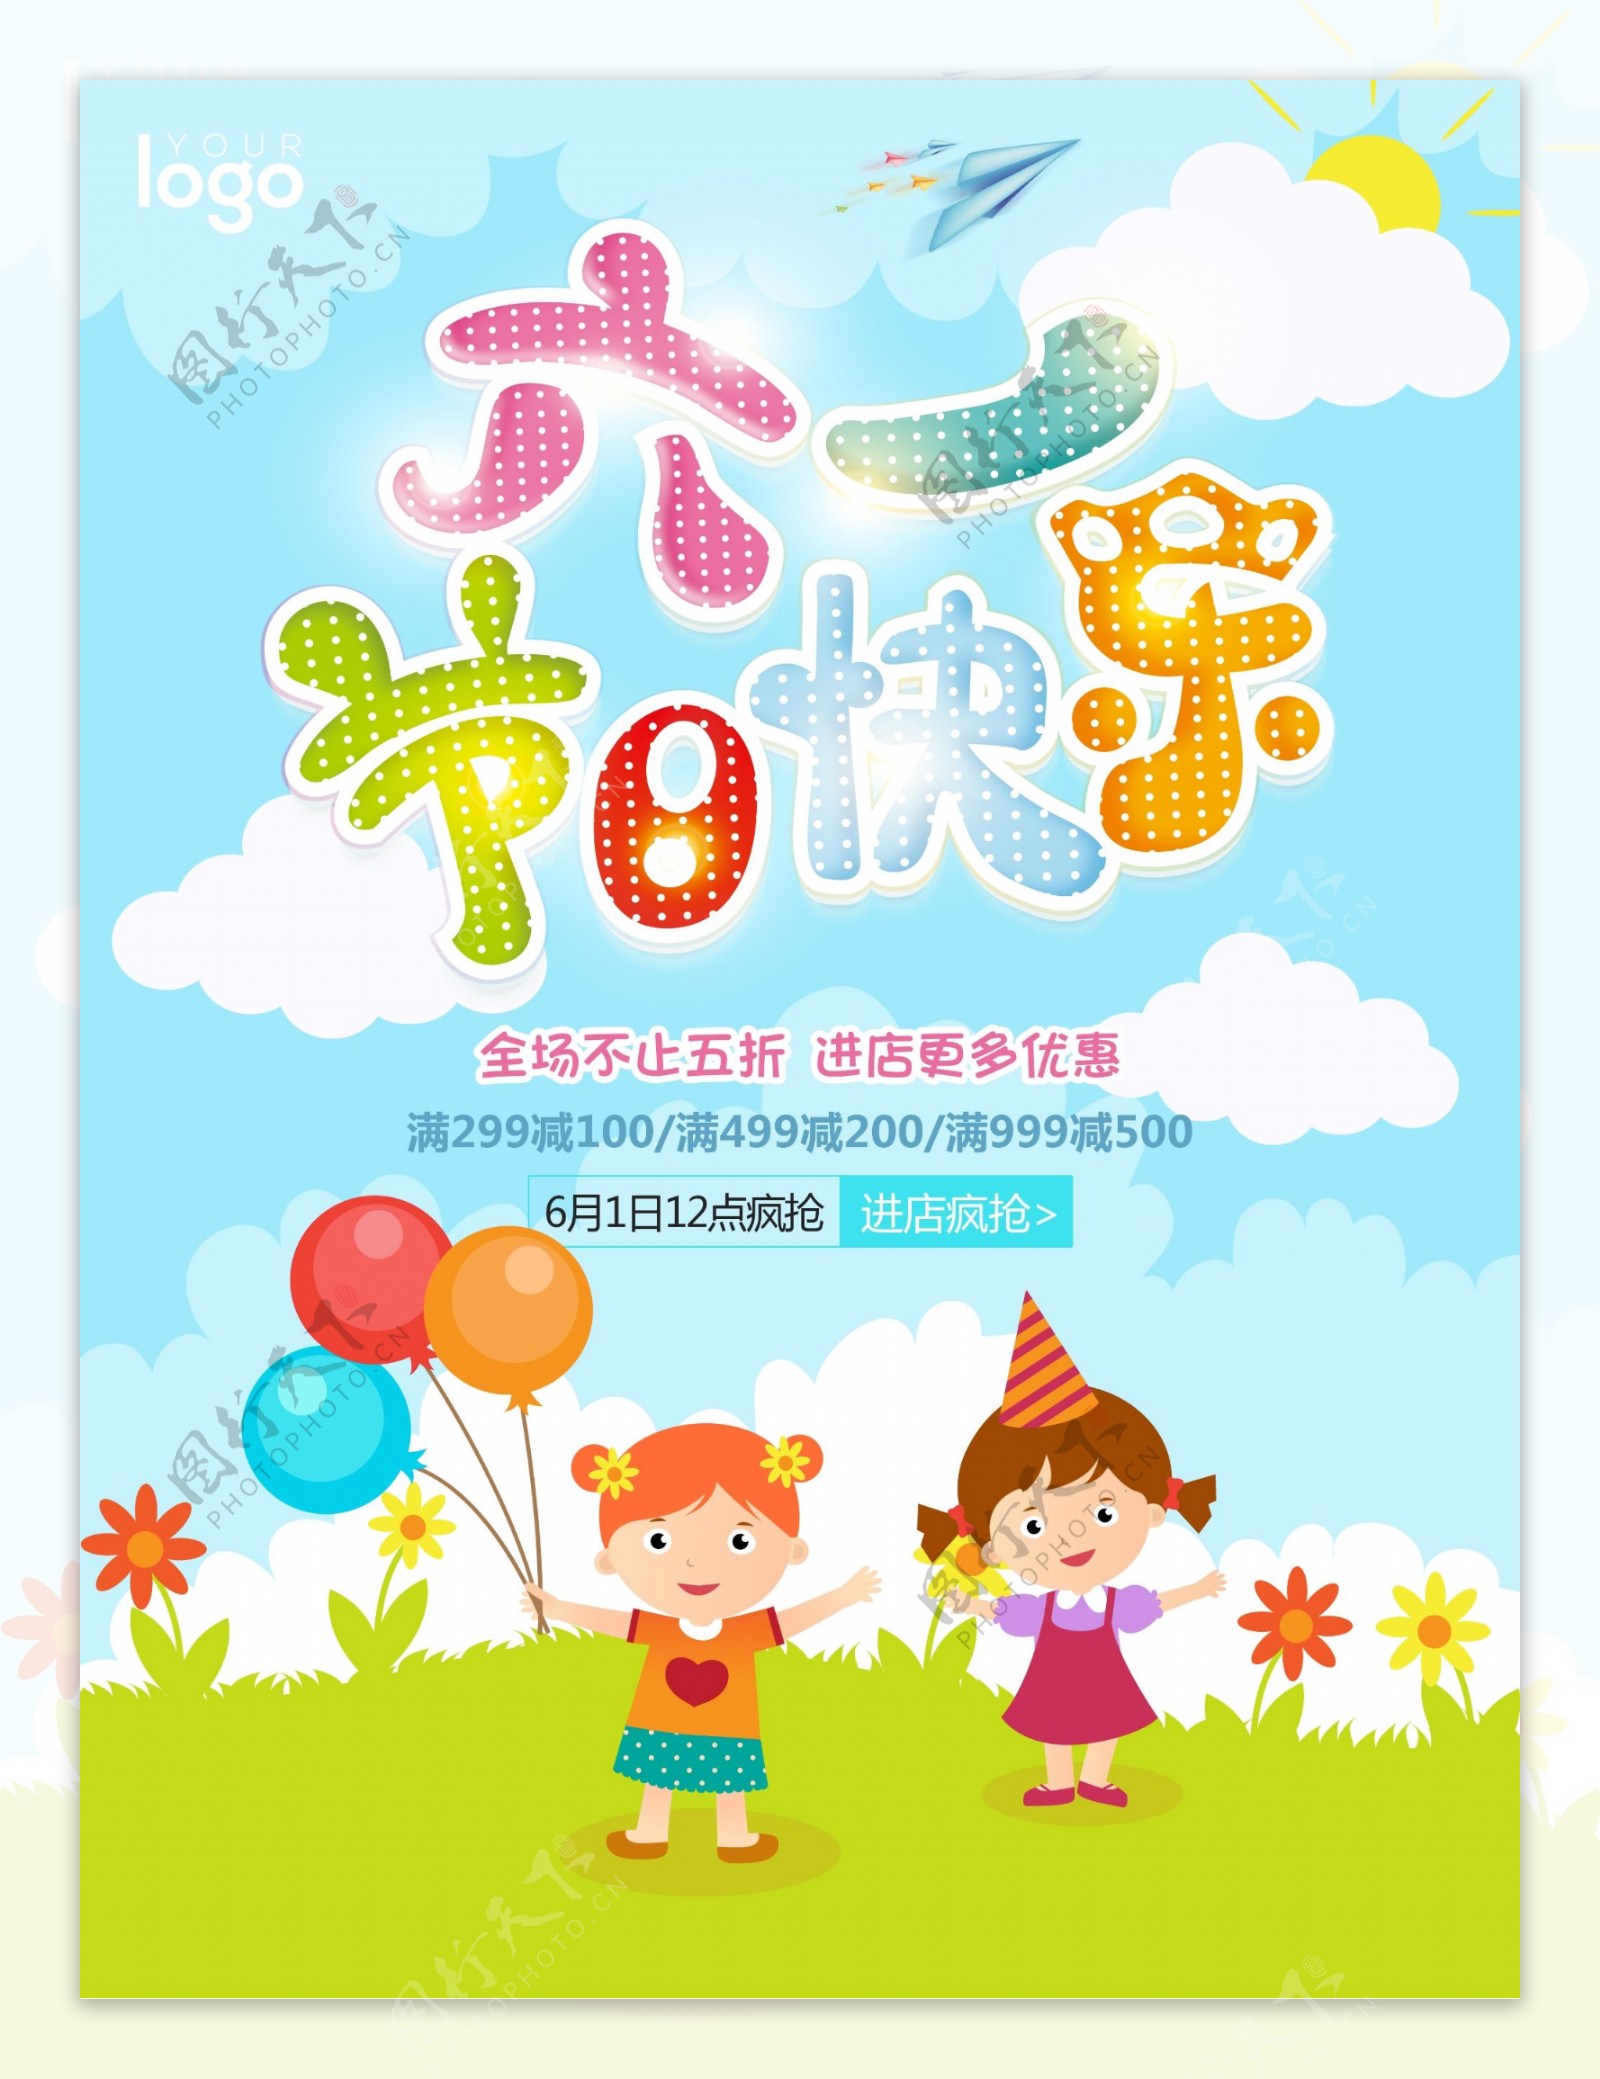 六一节日快乐节日促销海报